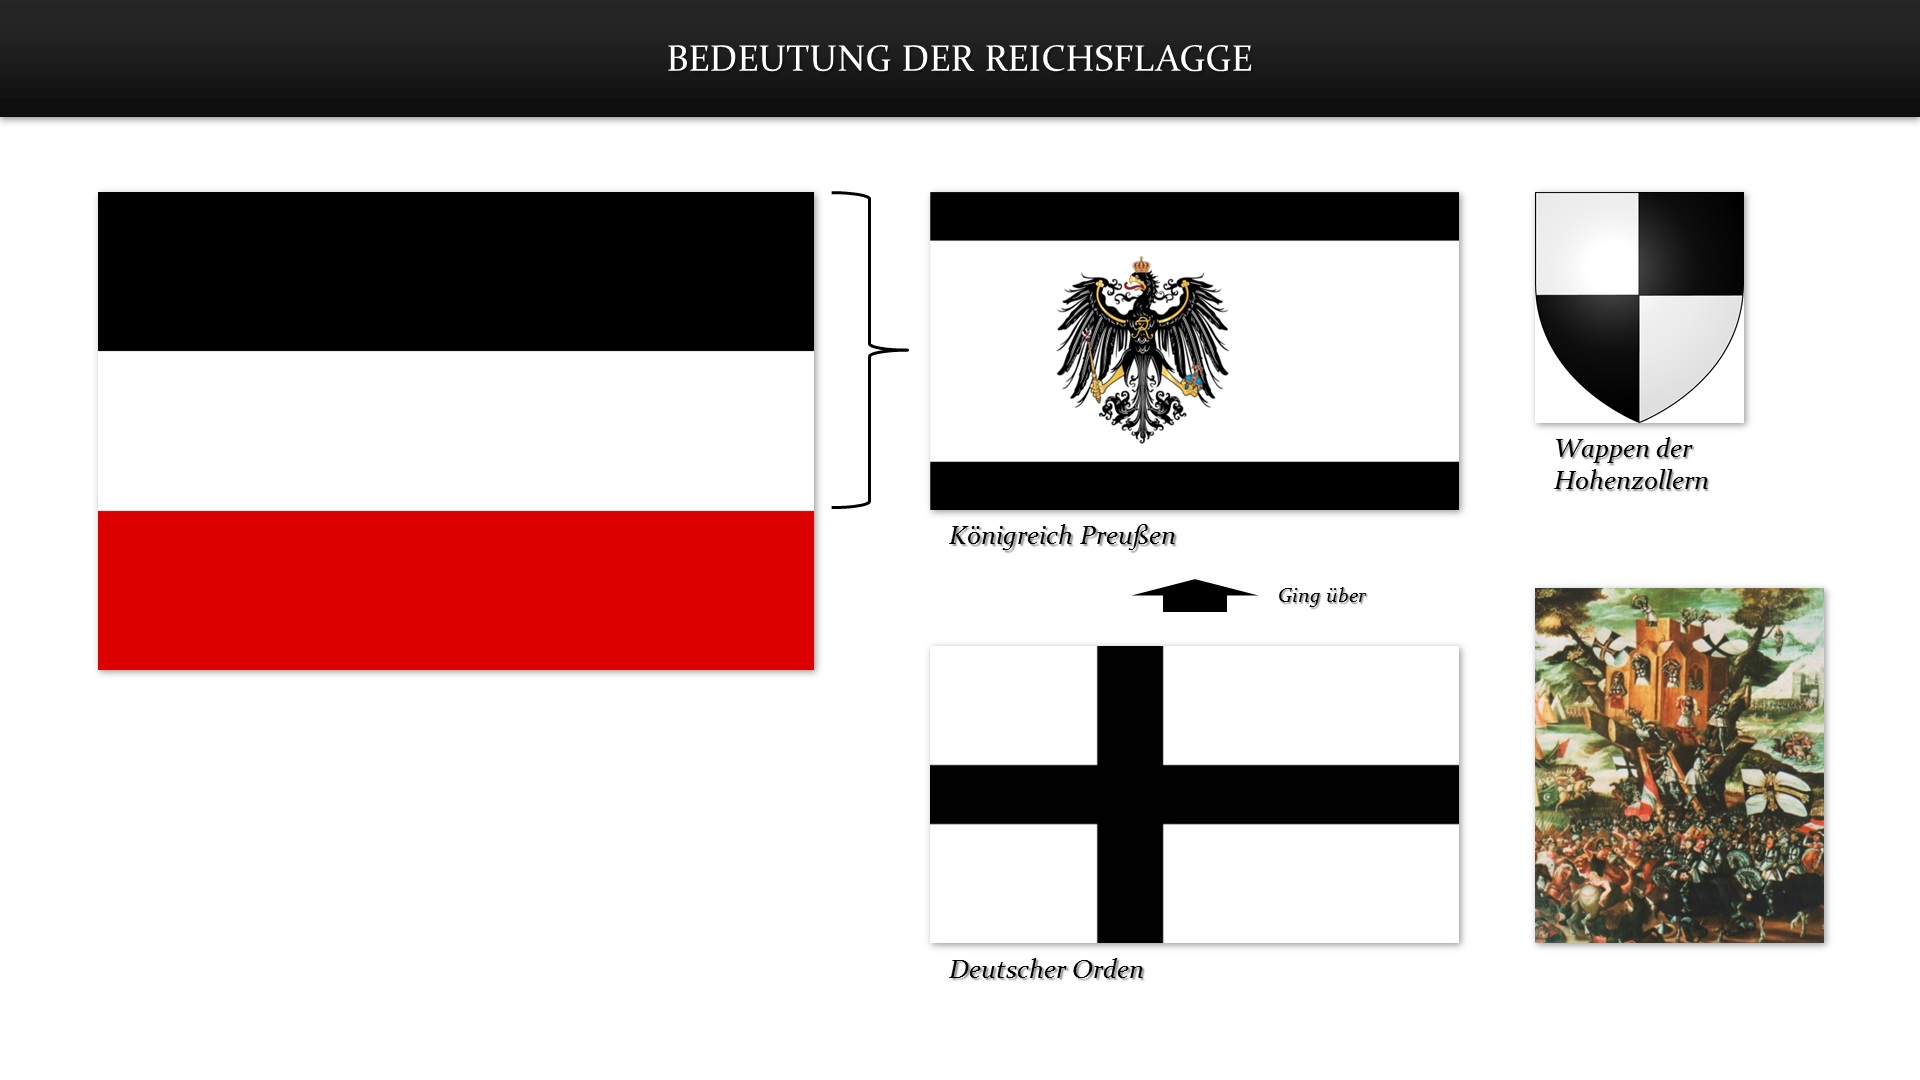 Reichsflagge Bedeutung